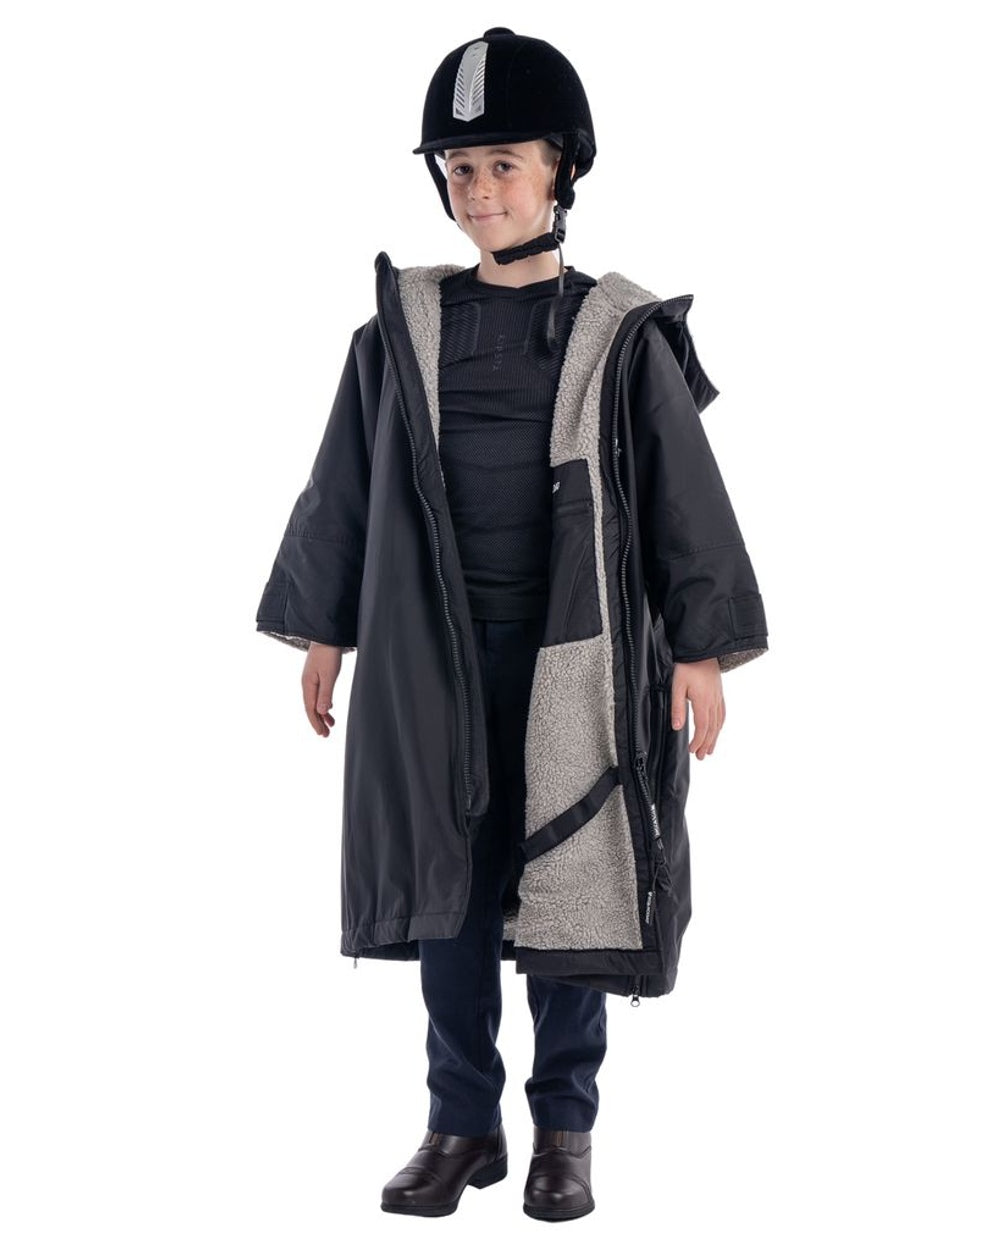 Equicoat Childrens Original Coat in Black 